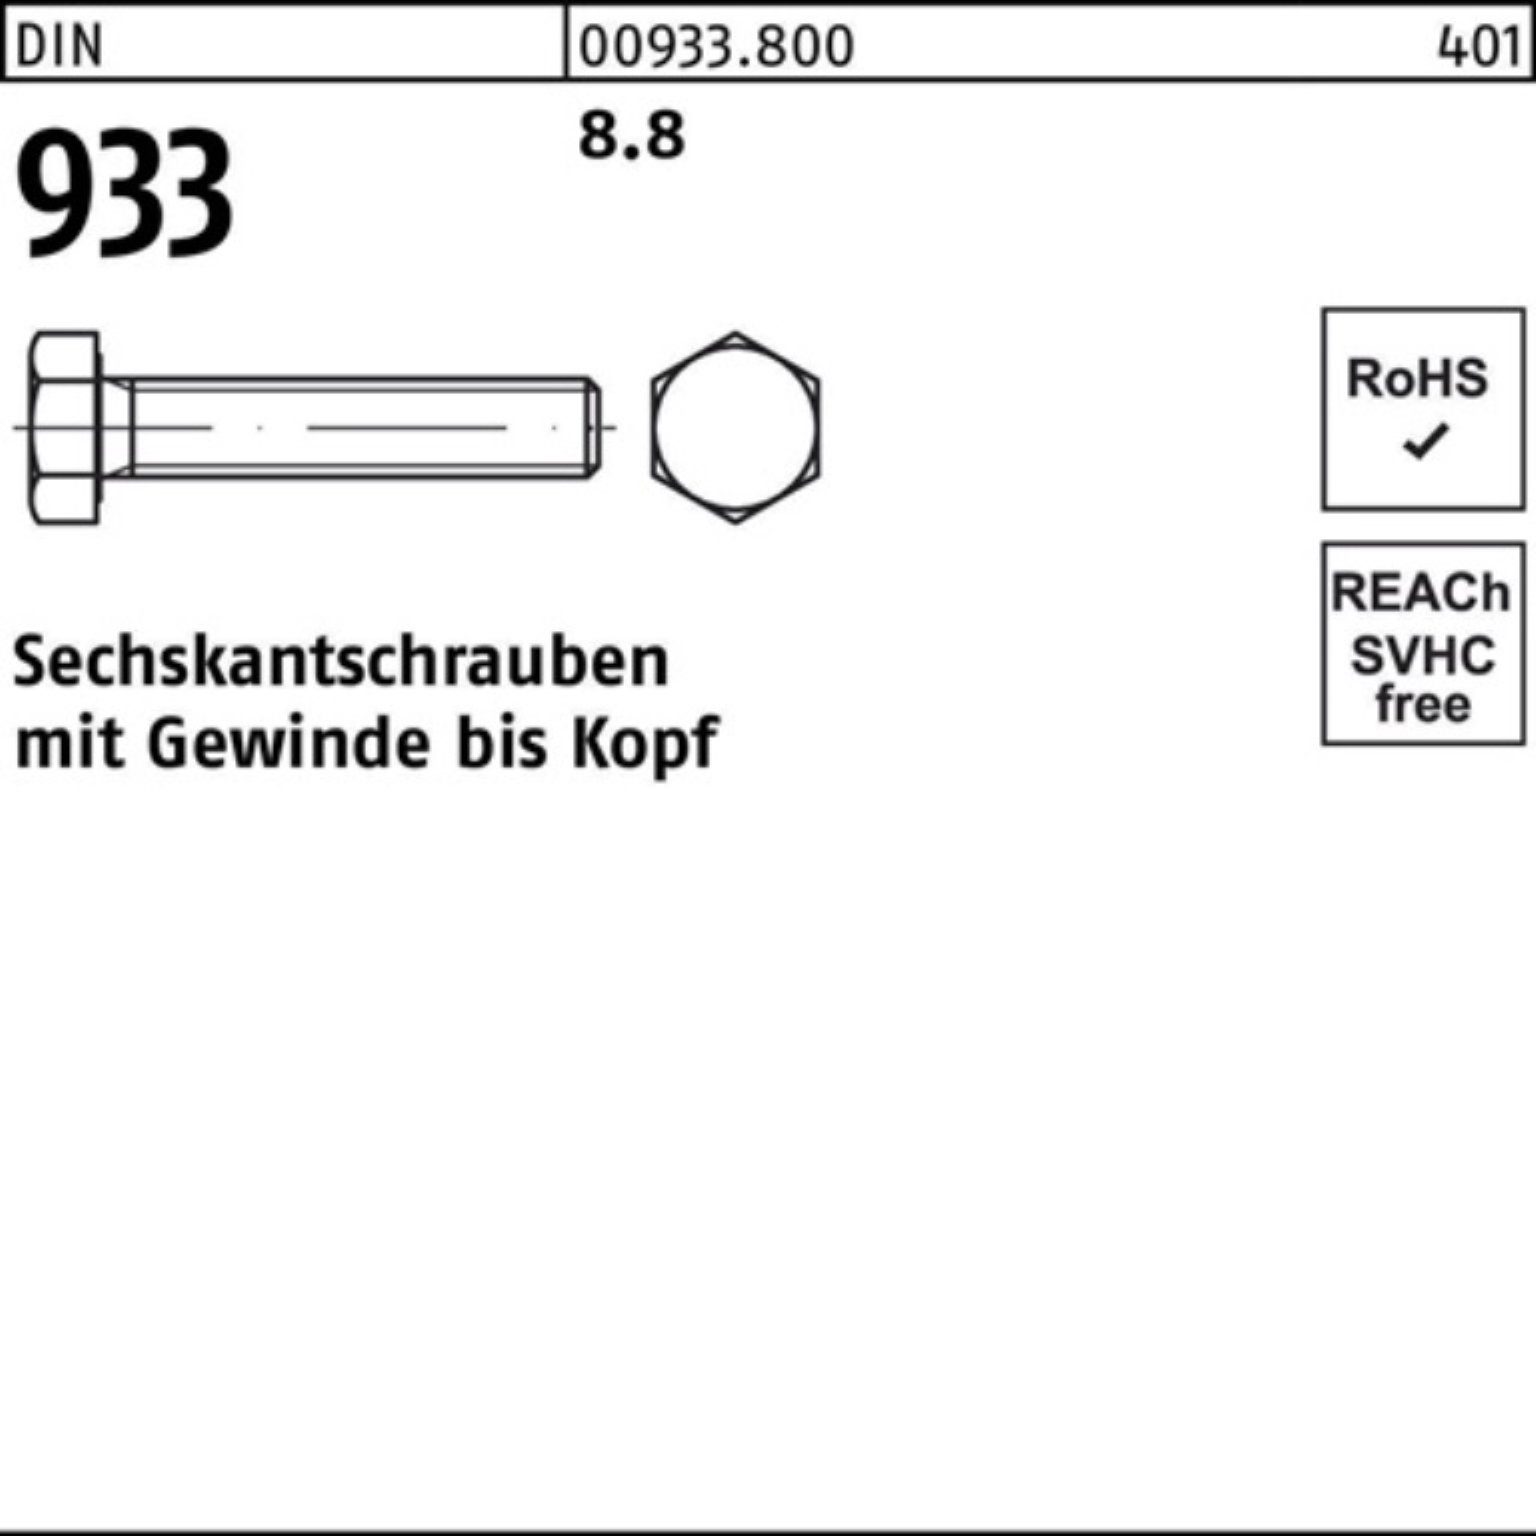 Reyher Sechskantschraube 500er Pack VG Stück 933 Sechskantschraube 8.8 DIN 500 20 DIN M3x 933